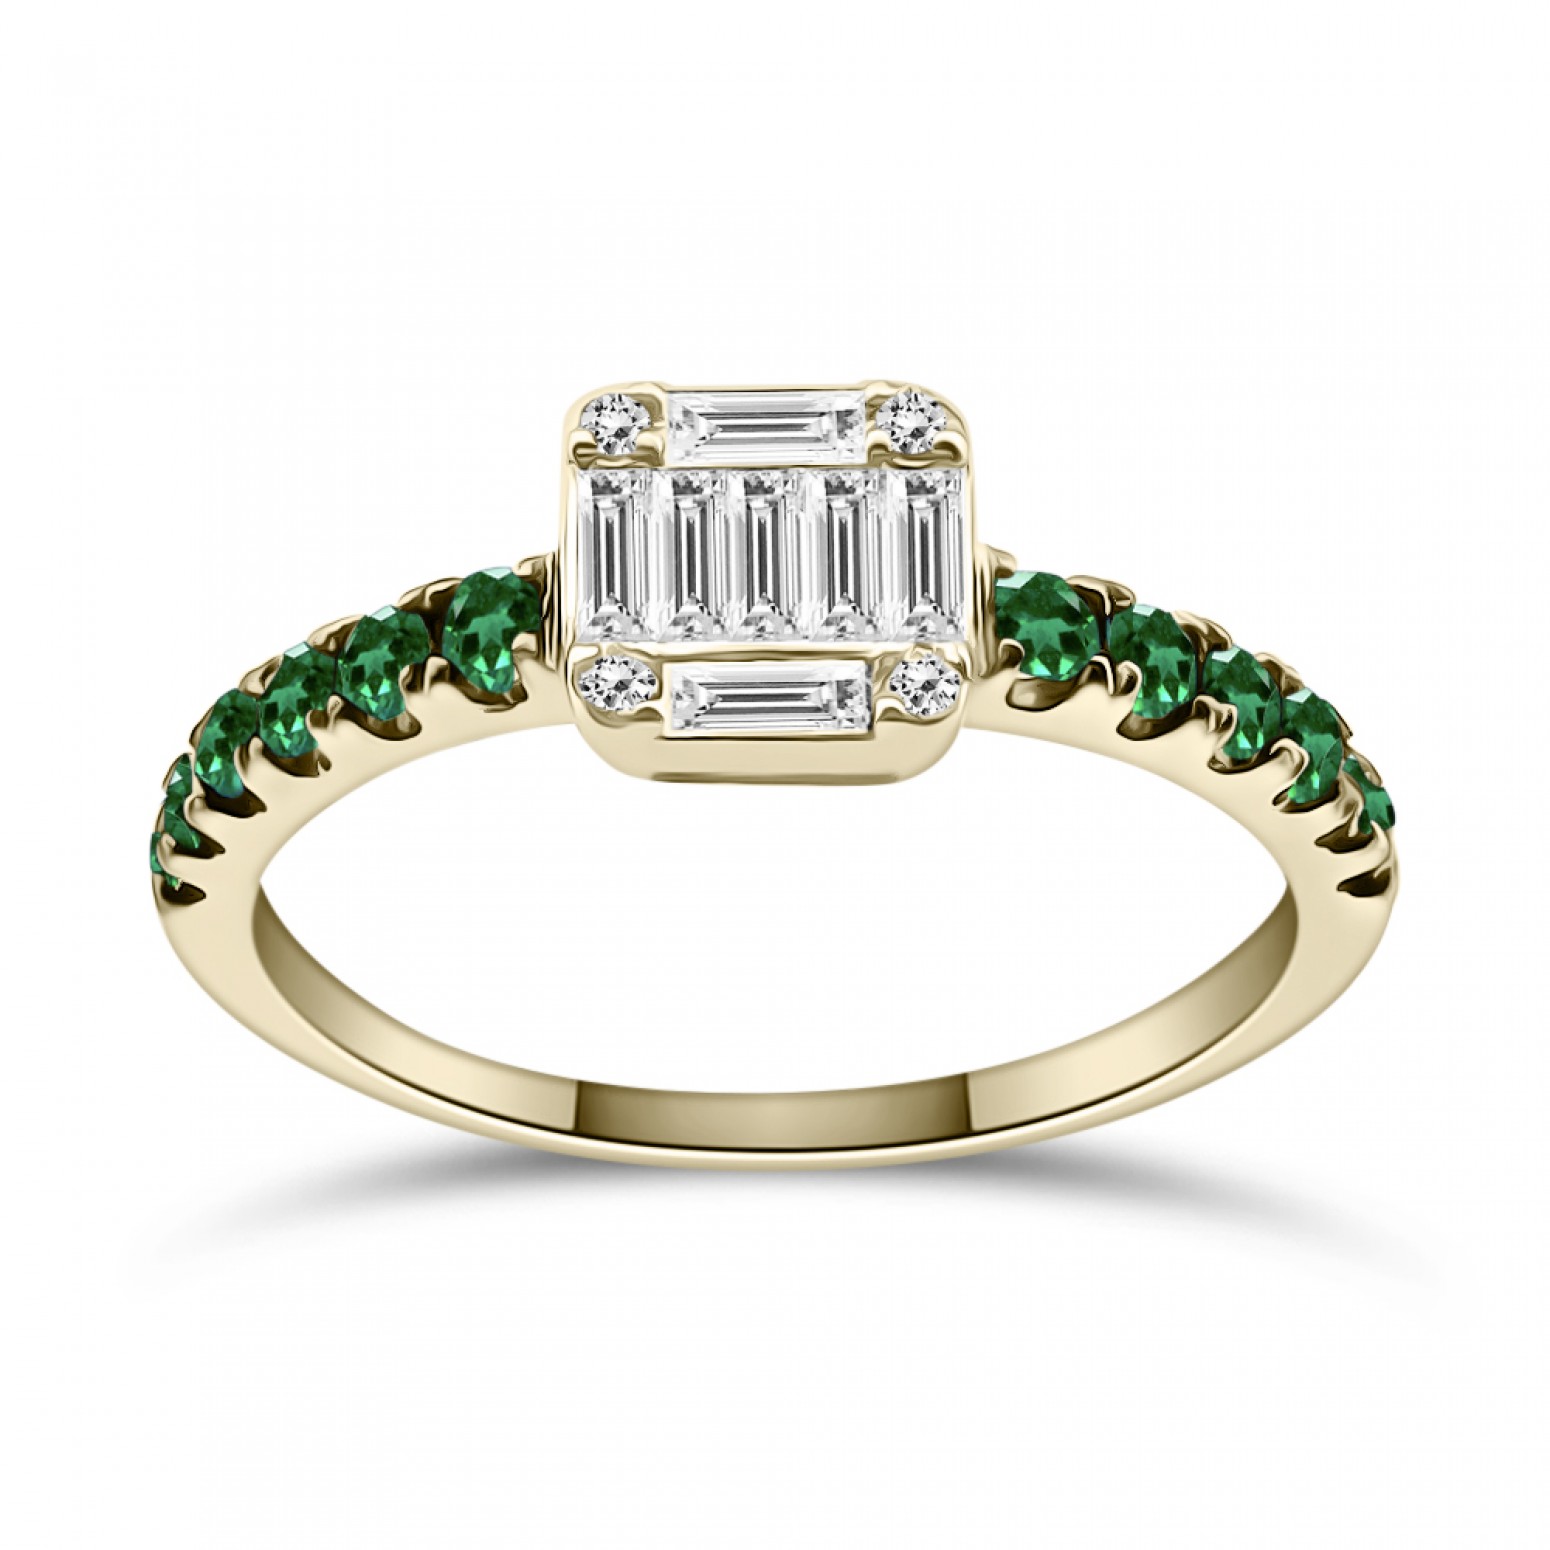 Μονόπετρο δαχτυλίδι Κ18 χρυσό με σμαράγδια 0.28ct και διαμάντια 0.28ct, VVS1, F da4203 ΔΑΧΤΥΛΙΔΙΑ ΑΡΡΑΒΩΝΑ Κοσμηματα - chrilia.gr